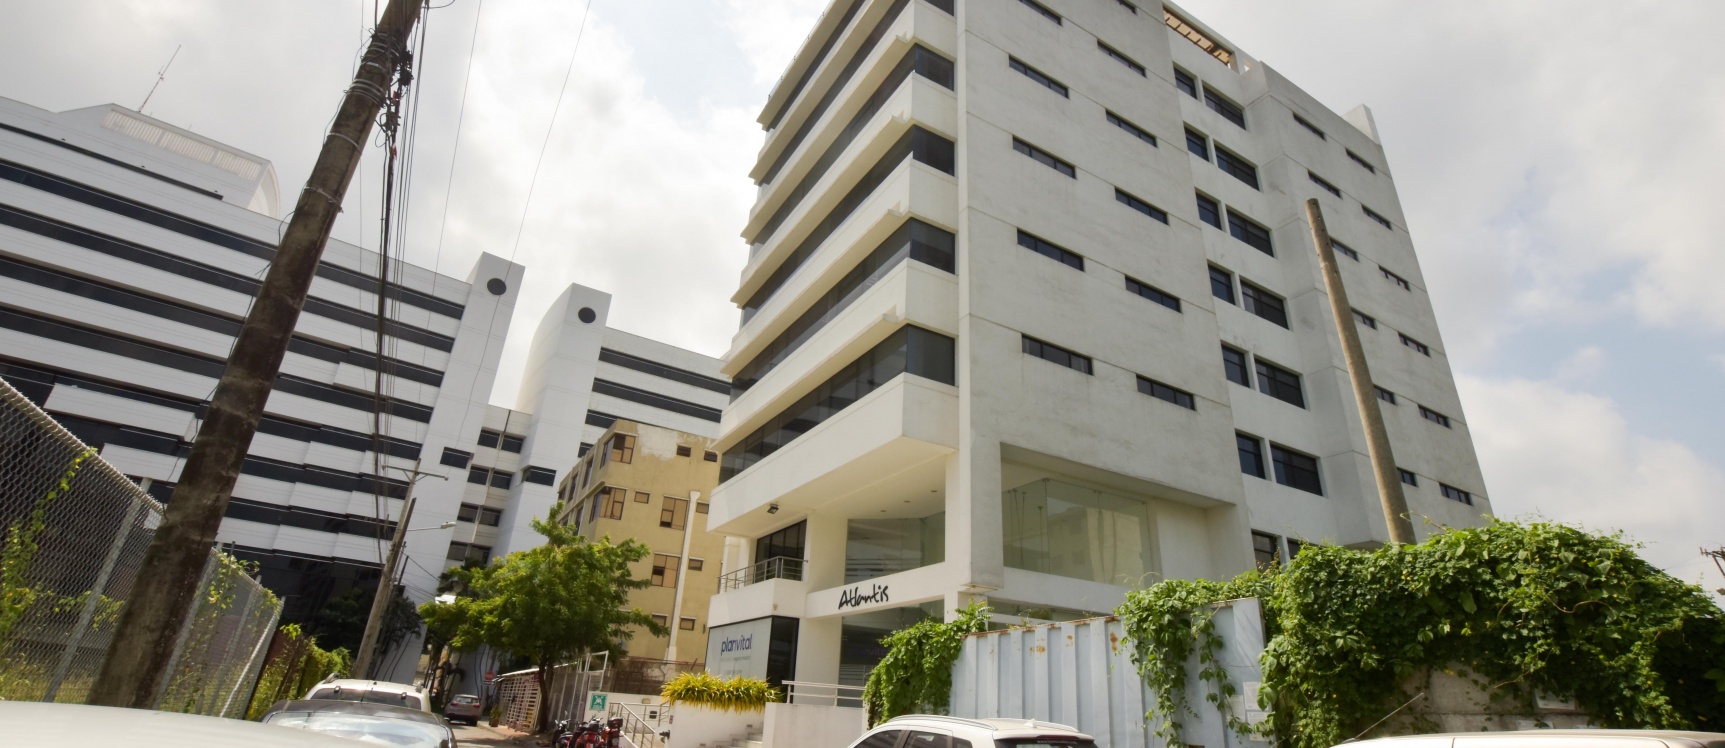 GeoBienes - Oficina amoblada en venta ubicada en el Edificio Atlantis - Plusvalia Guayaquil Casas de venta y alquiler Inmobiliaria Ecuador